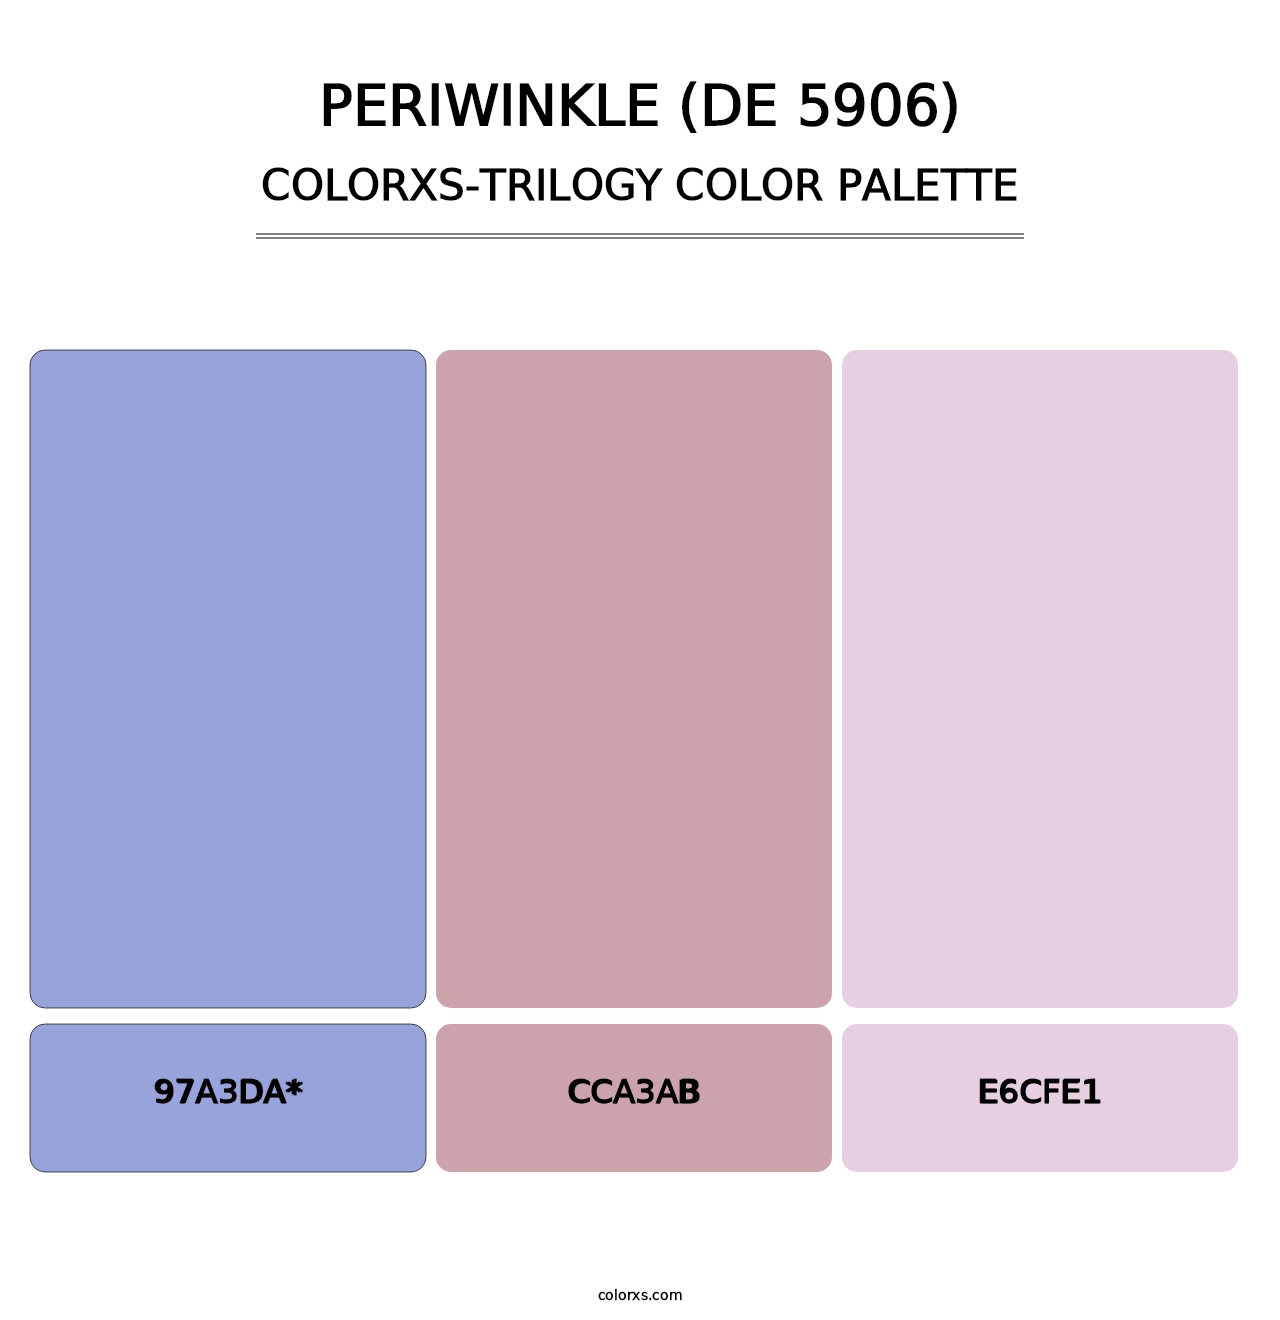 Periwinkle (DE 5906) - Colorxs Trilogy Palette